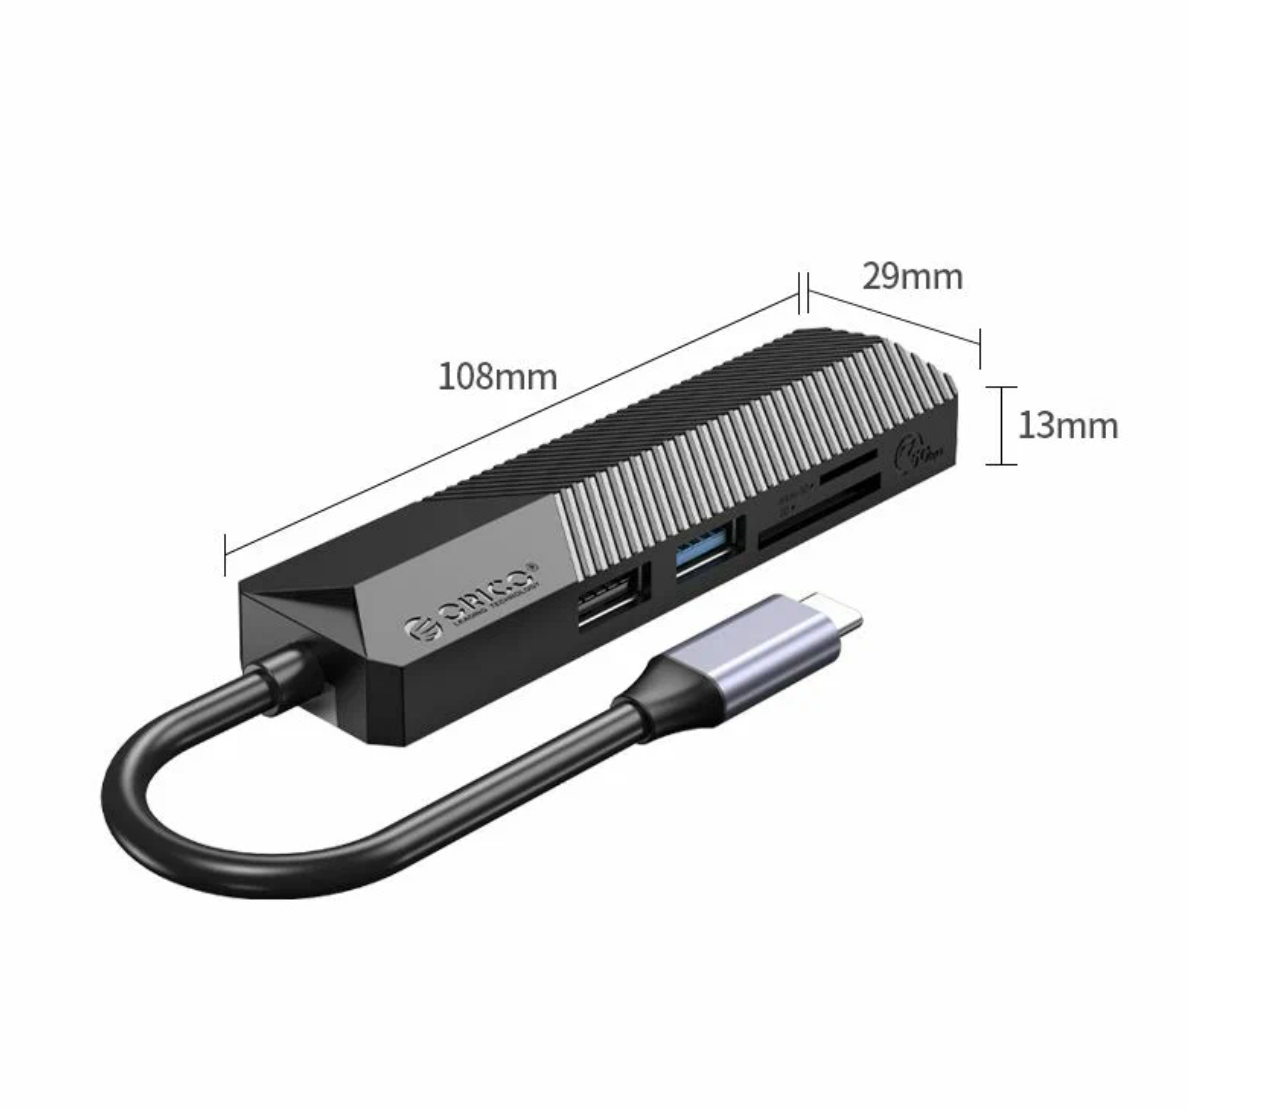 USB-концентратор ORICO MDK-5P, разъемов: 3, 13 см, черный